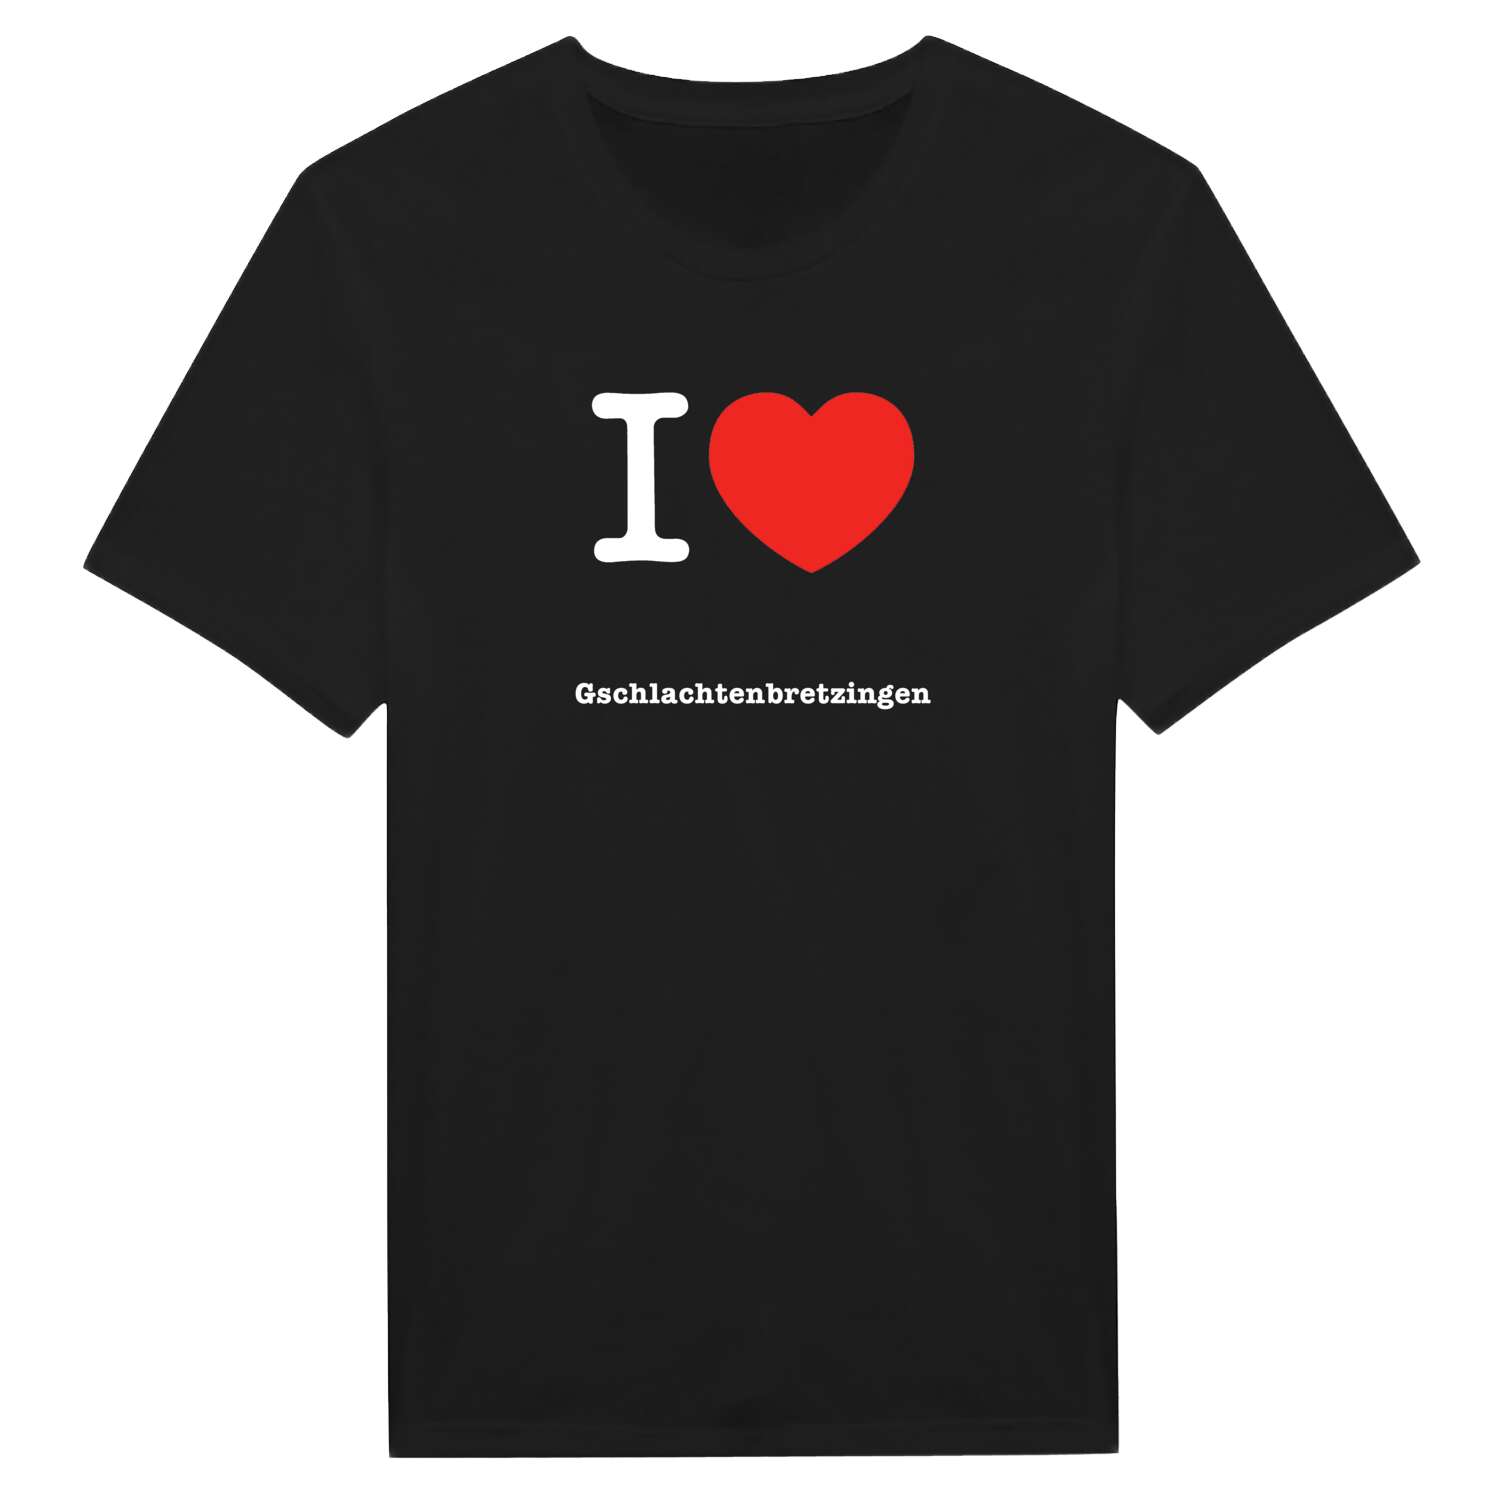 Gschlachtenbretzingen T-Shirt »I love«